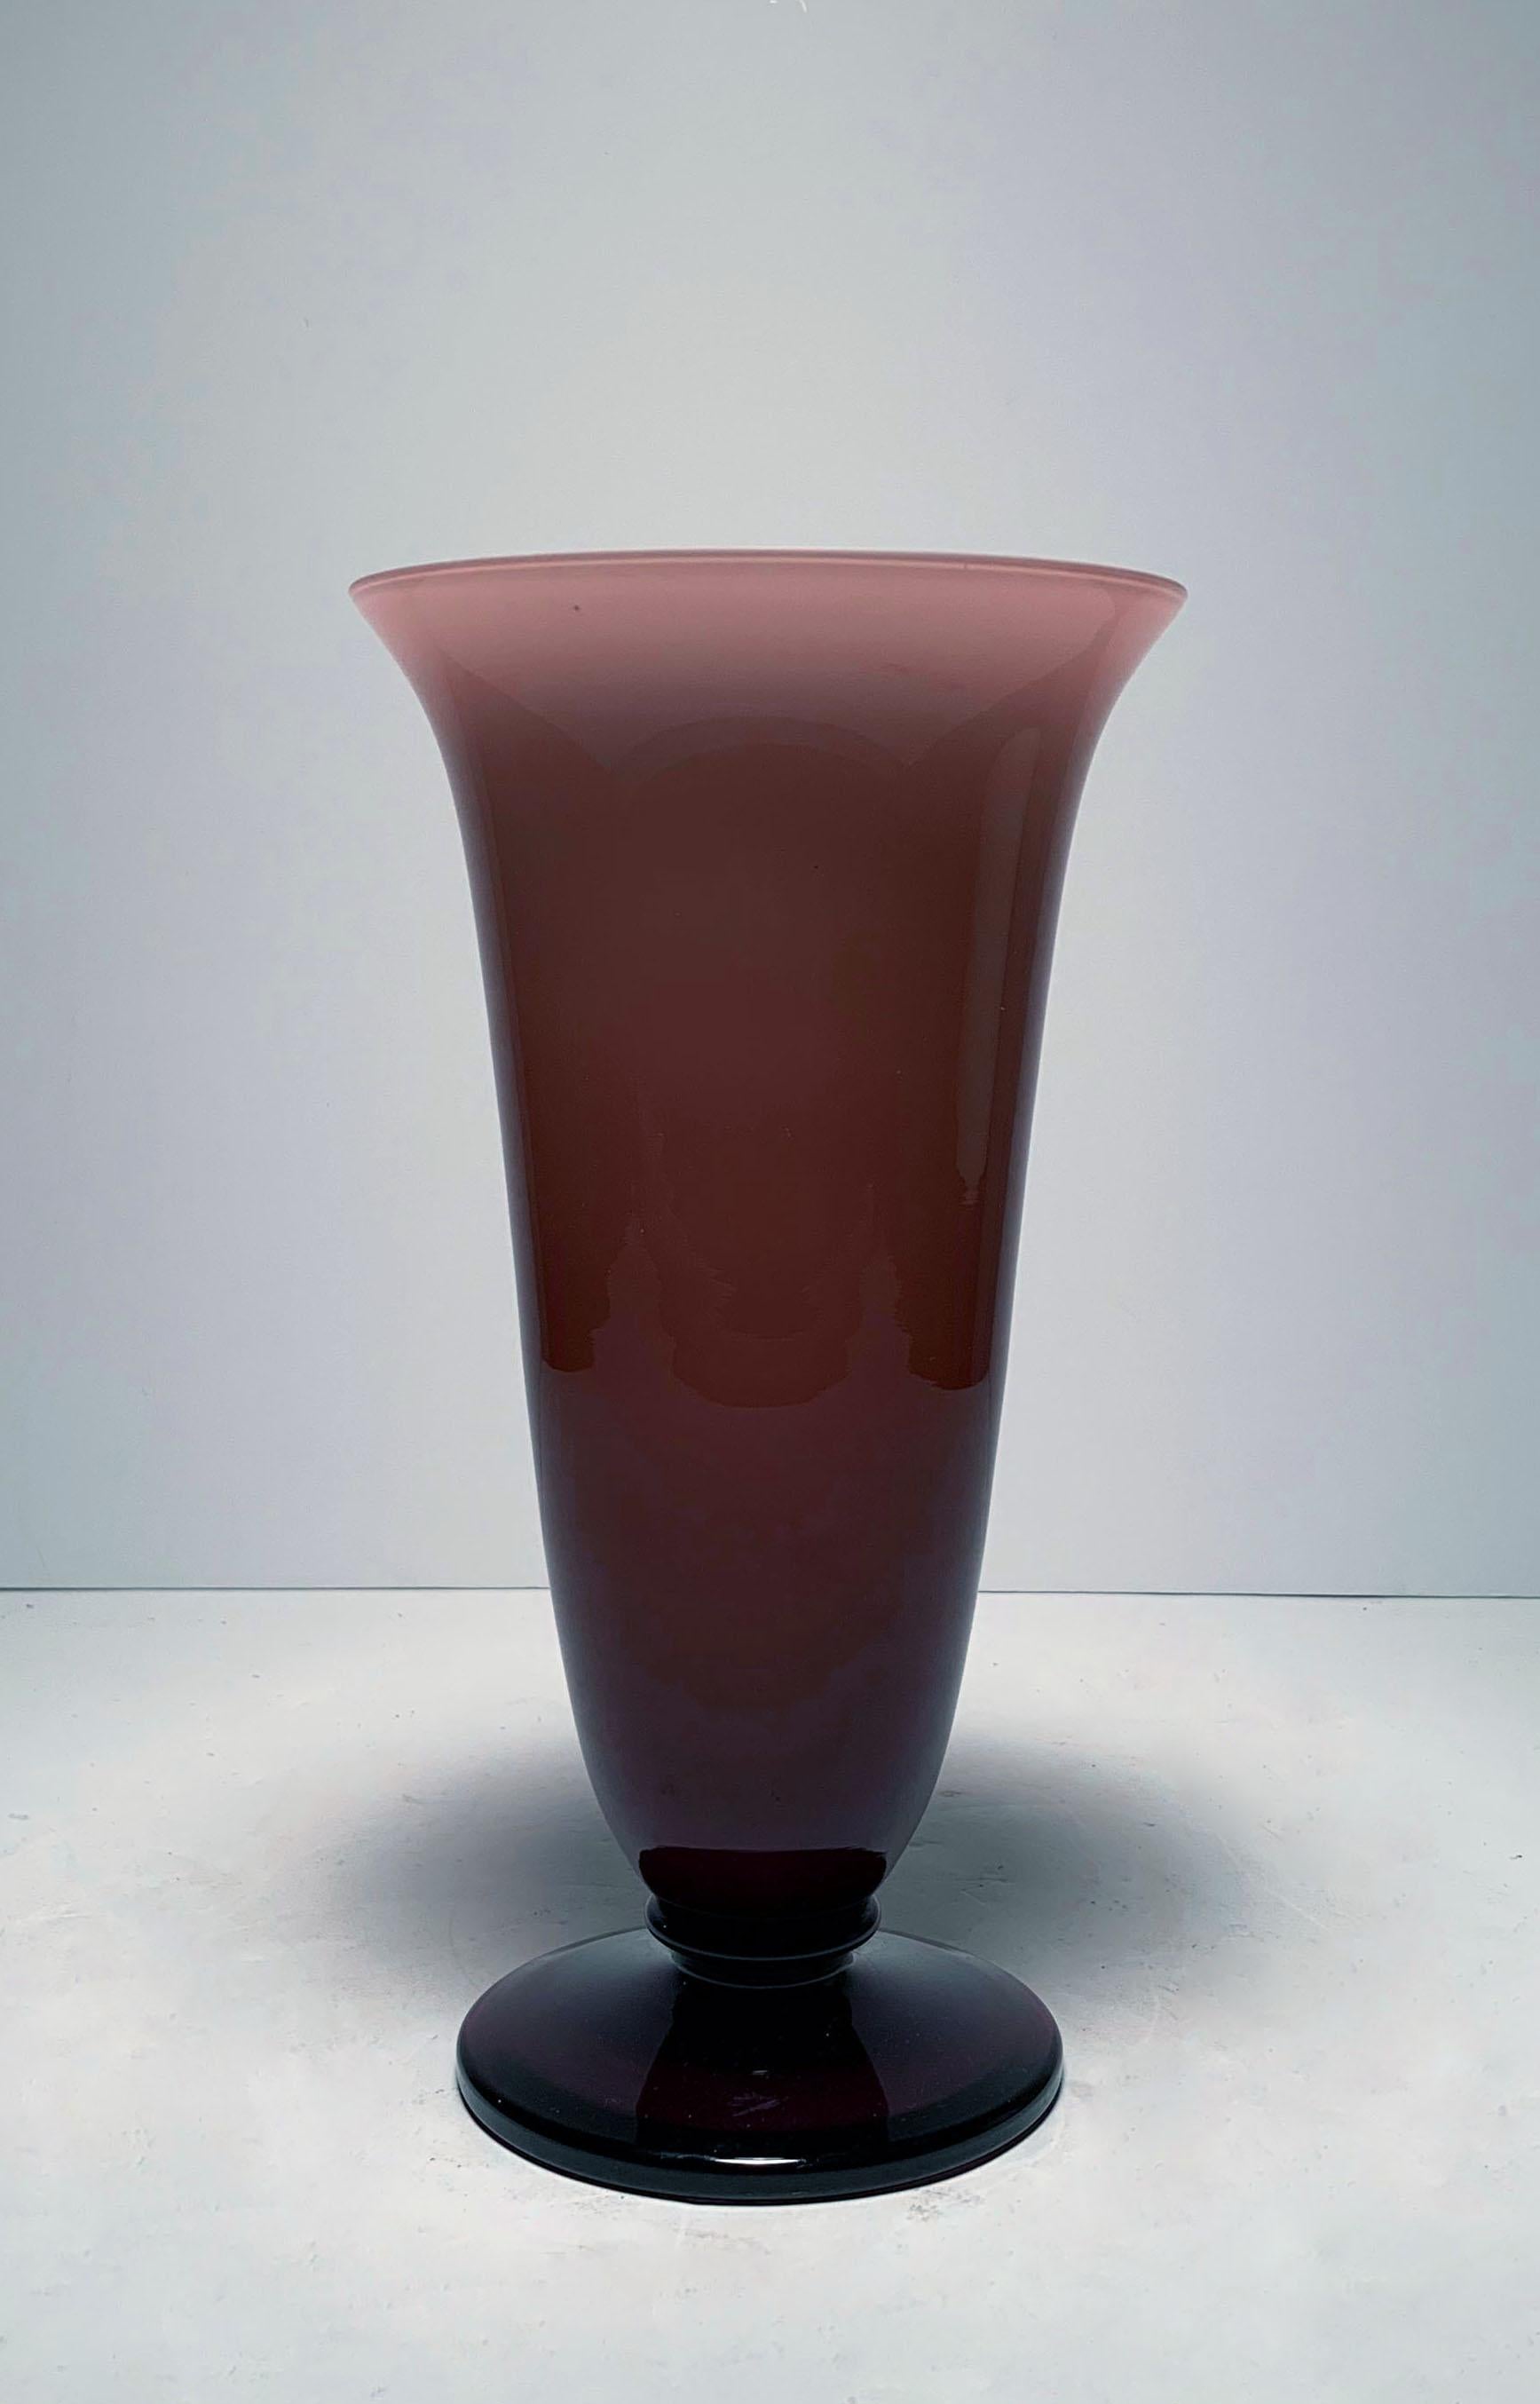 Empoli Italienische Vase aus Glas mit lila Trauben.

